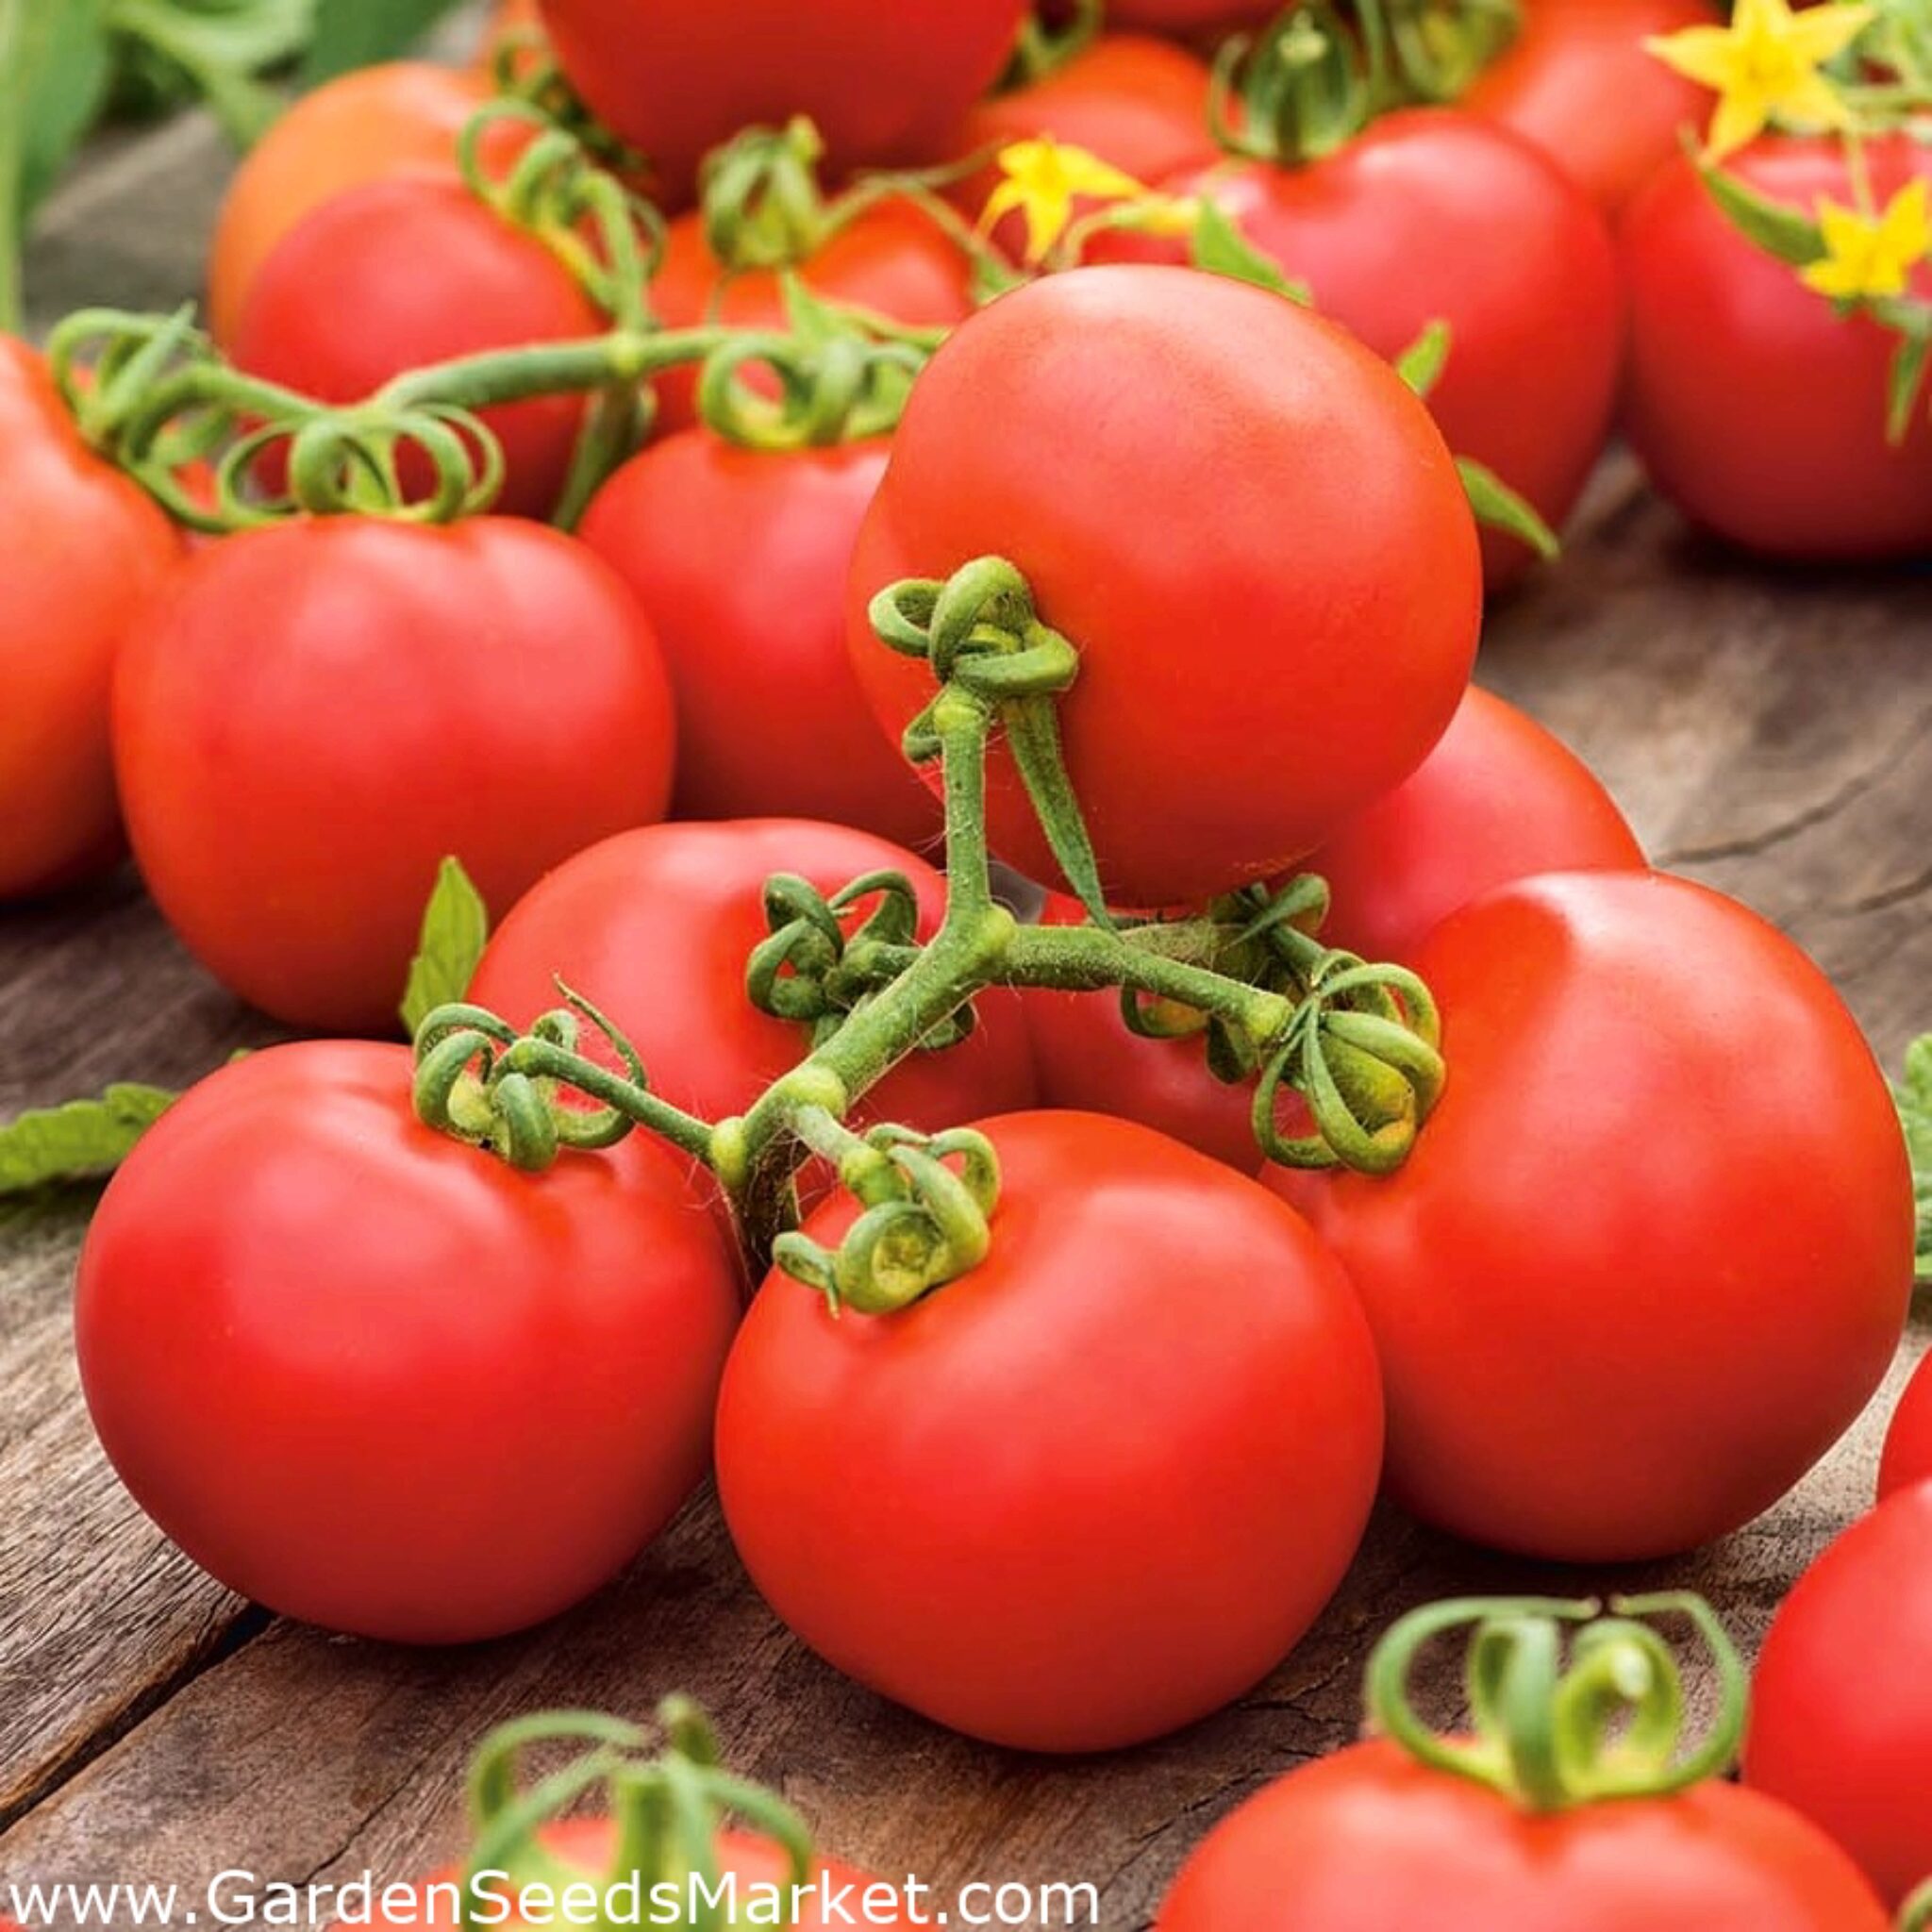 8 Methodes Pour Se Debarrasser Des Trous Dans Les Feuilles Des Plants De Tomates